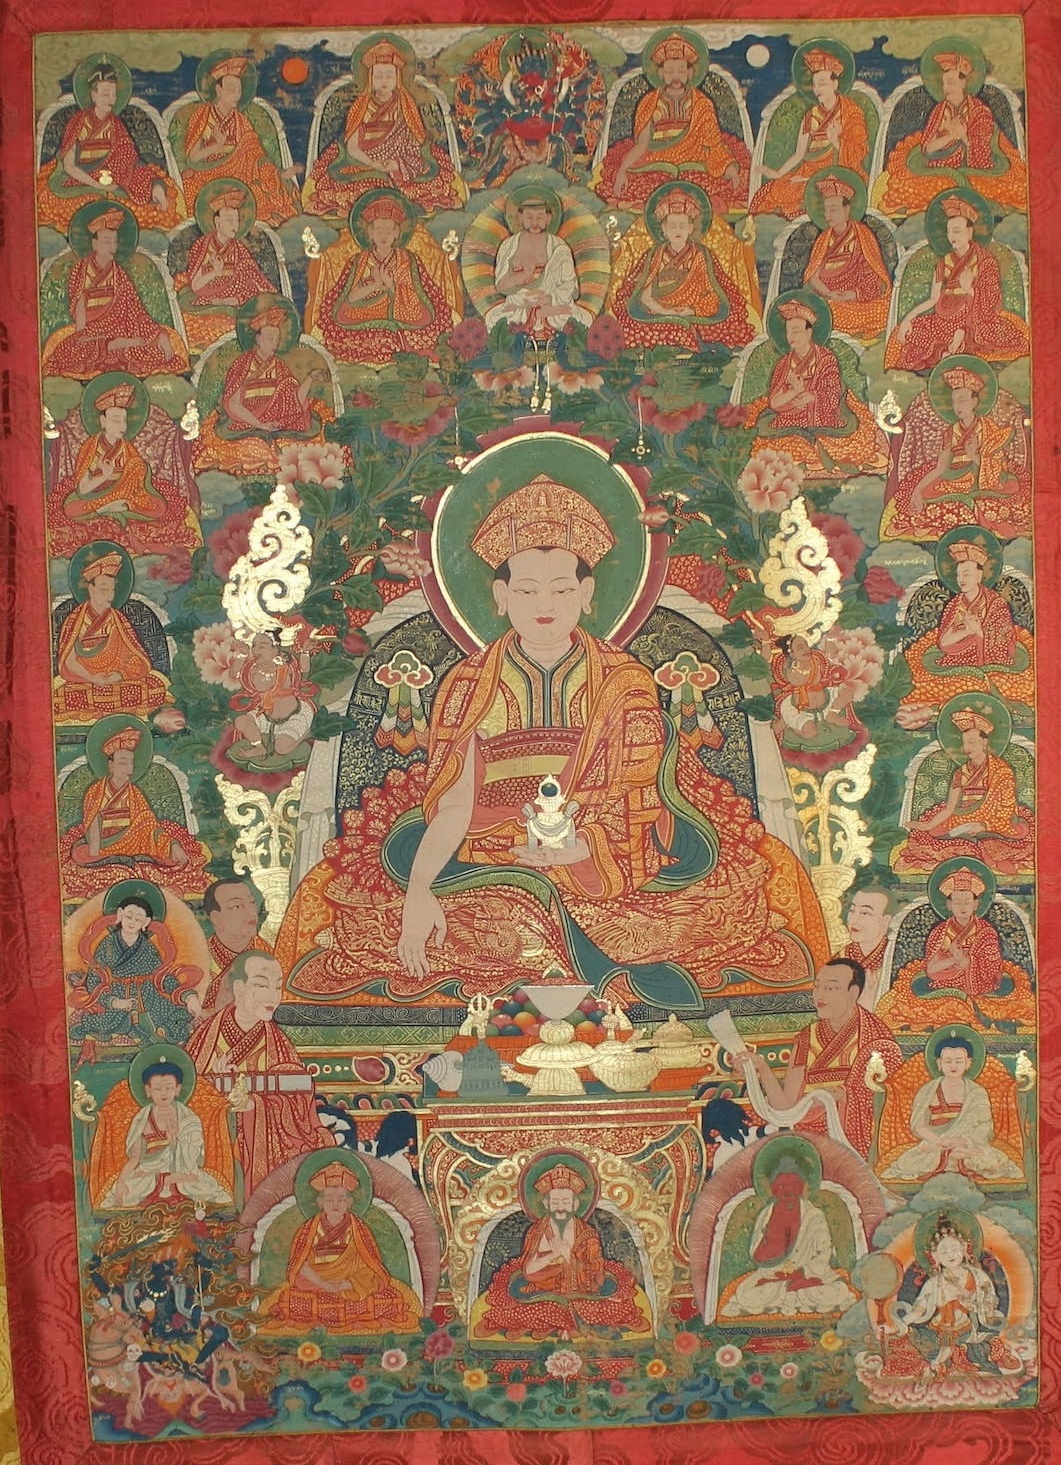 竹巴噶舉祖師藏巴甲熱．益西多杰(1161-1211)及其相關傳承